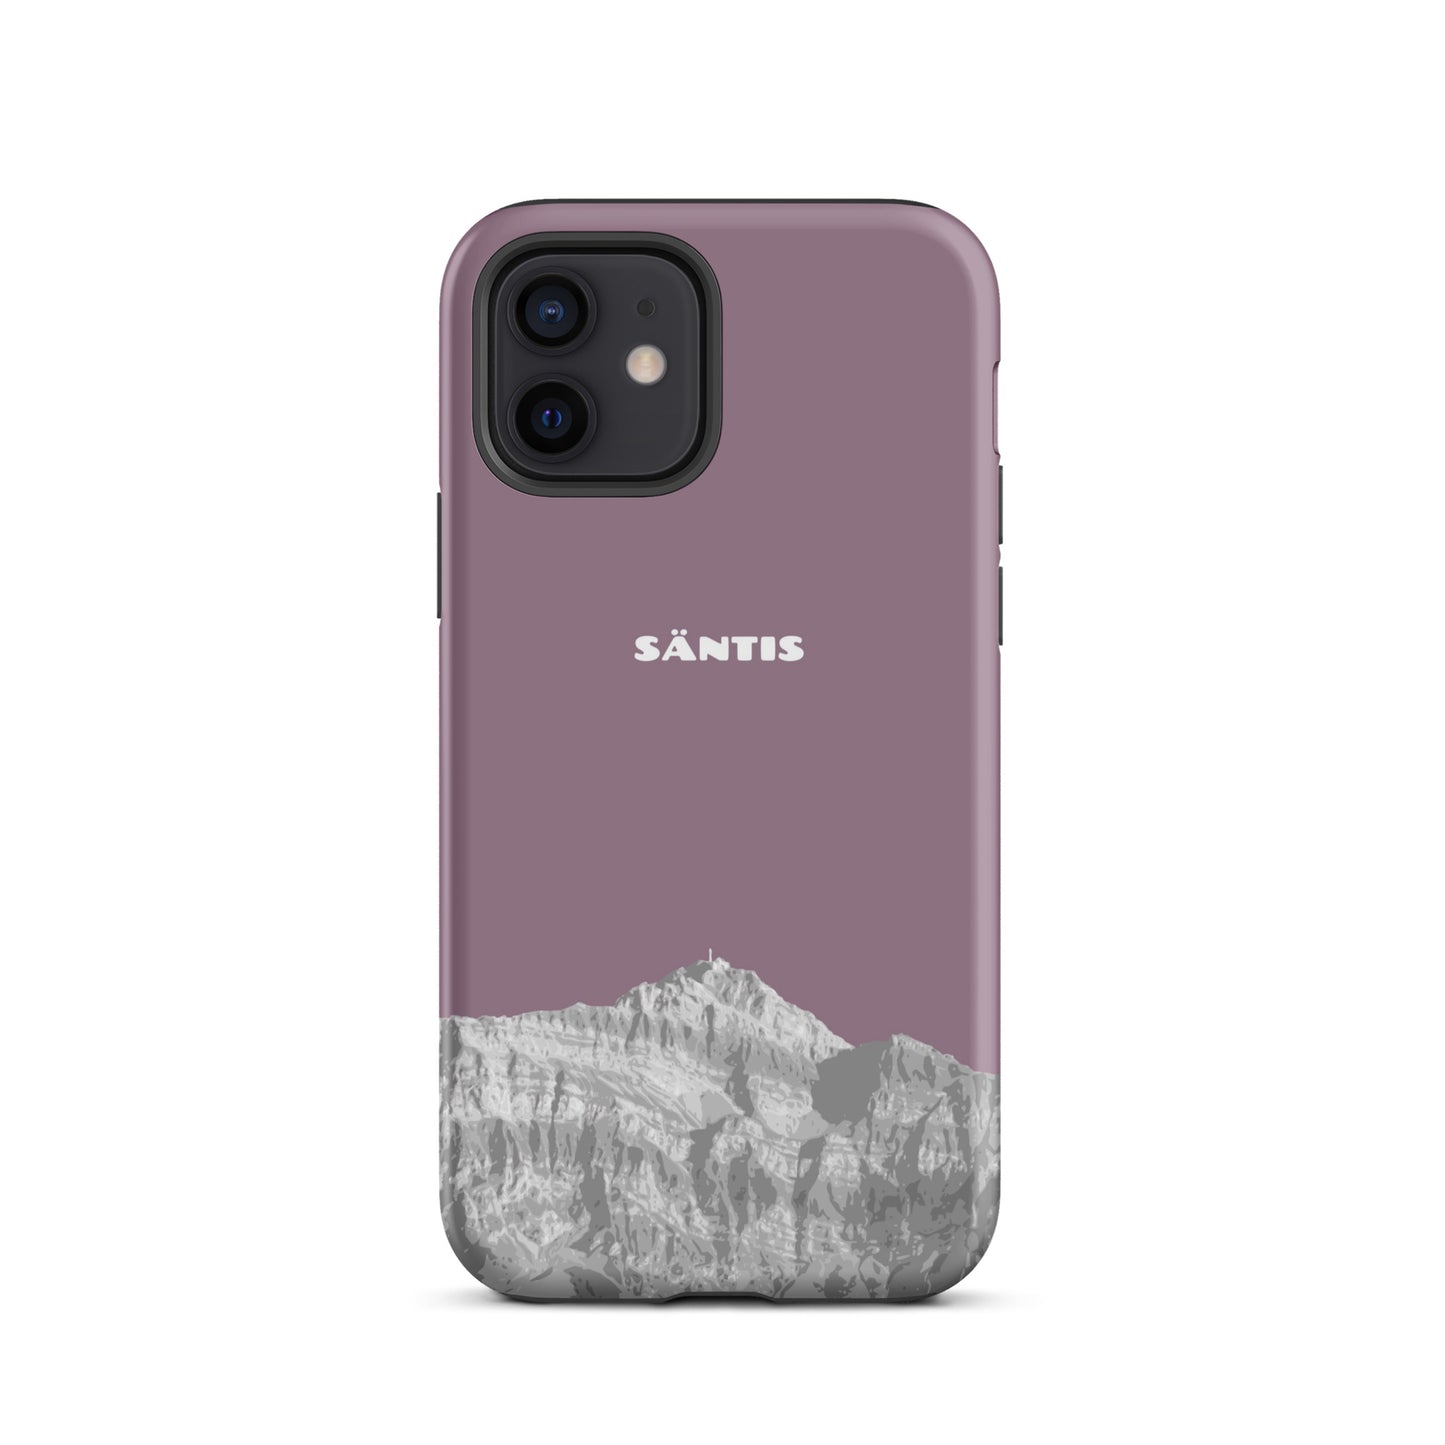 Hülle für das iPhone 12 von Apple in der Farbe Pastellviolett, dass den Säntis im Alpstein zeigt.